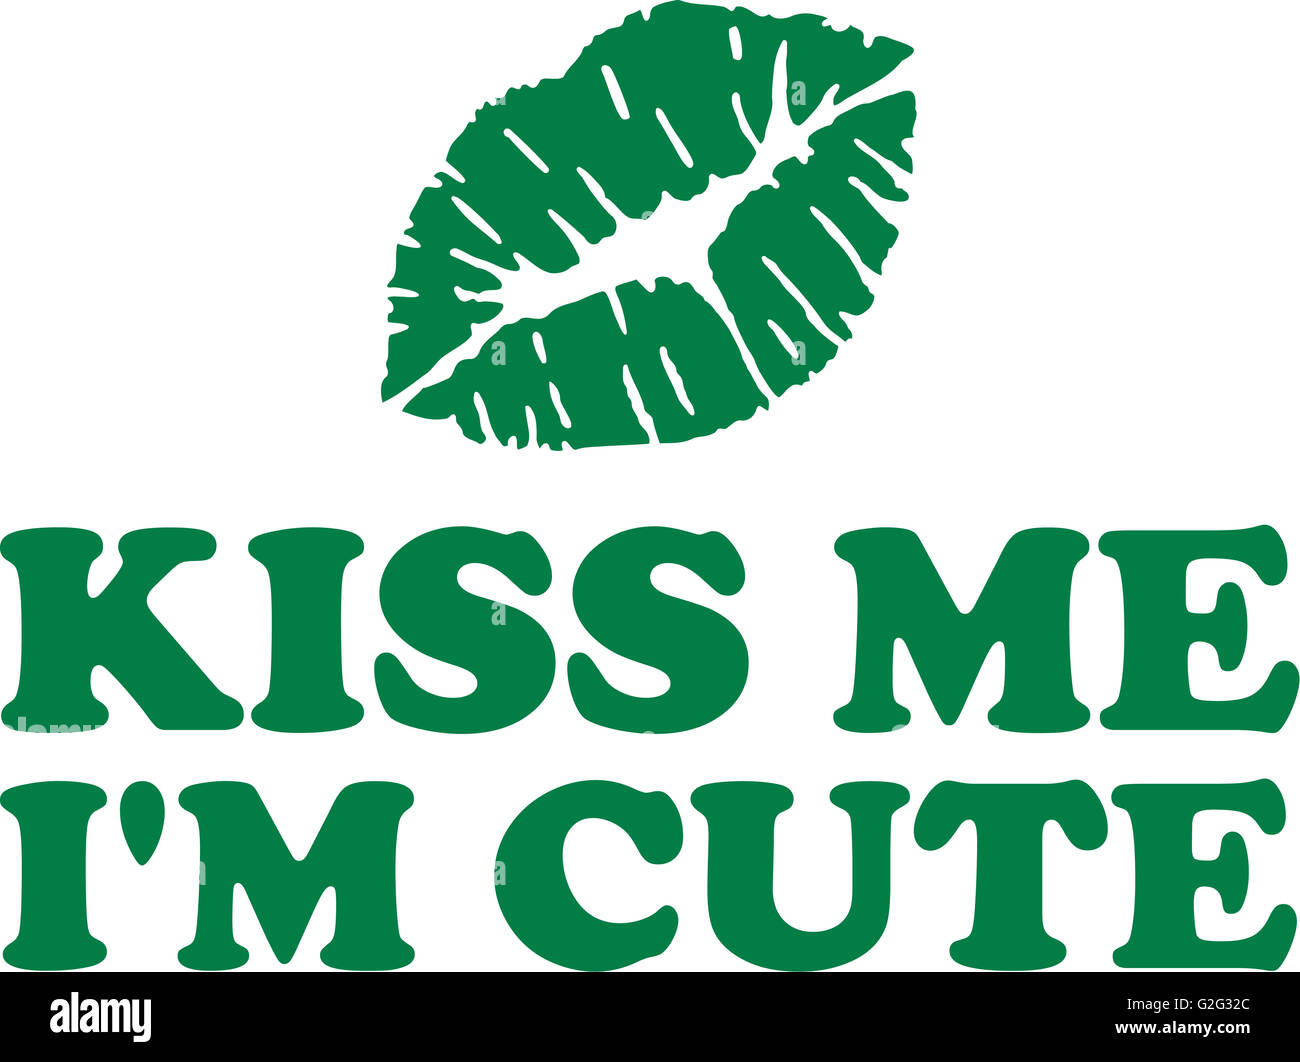 Kiss me sto carino con verde labbra irlandese Foto Stock